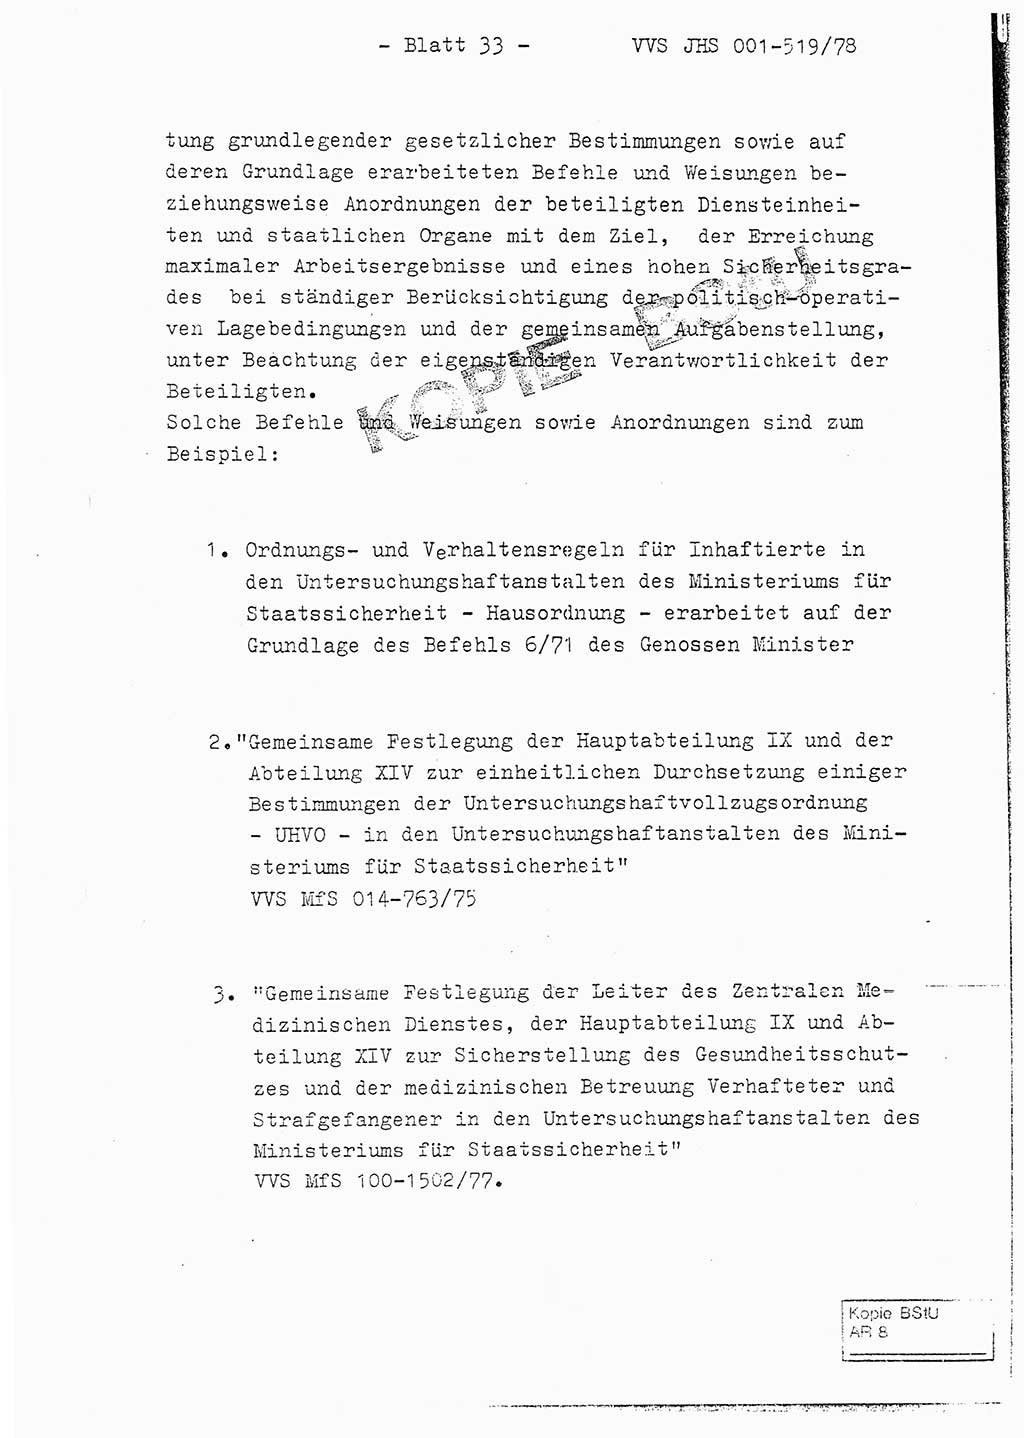 Fachschulabschlußarbeit Hauptmann Alfons Lützelberger (Abt. ⅩⅣ), Ministerium für Staatssicherheit (MfS) [Deutsche Demokratische Republik (DDR)], Juristische Hochschule (JHS), Vertrauliche Verschlußsache (VVS) 001-519/78, Potsdam 1978, Blatt 33 (FS-Abschl.-Arb. MfS DDR JHS VVS 001-519/78 1978, Bl. 33)